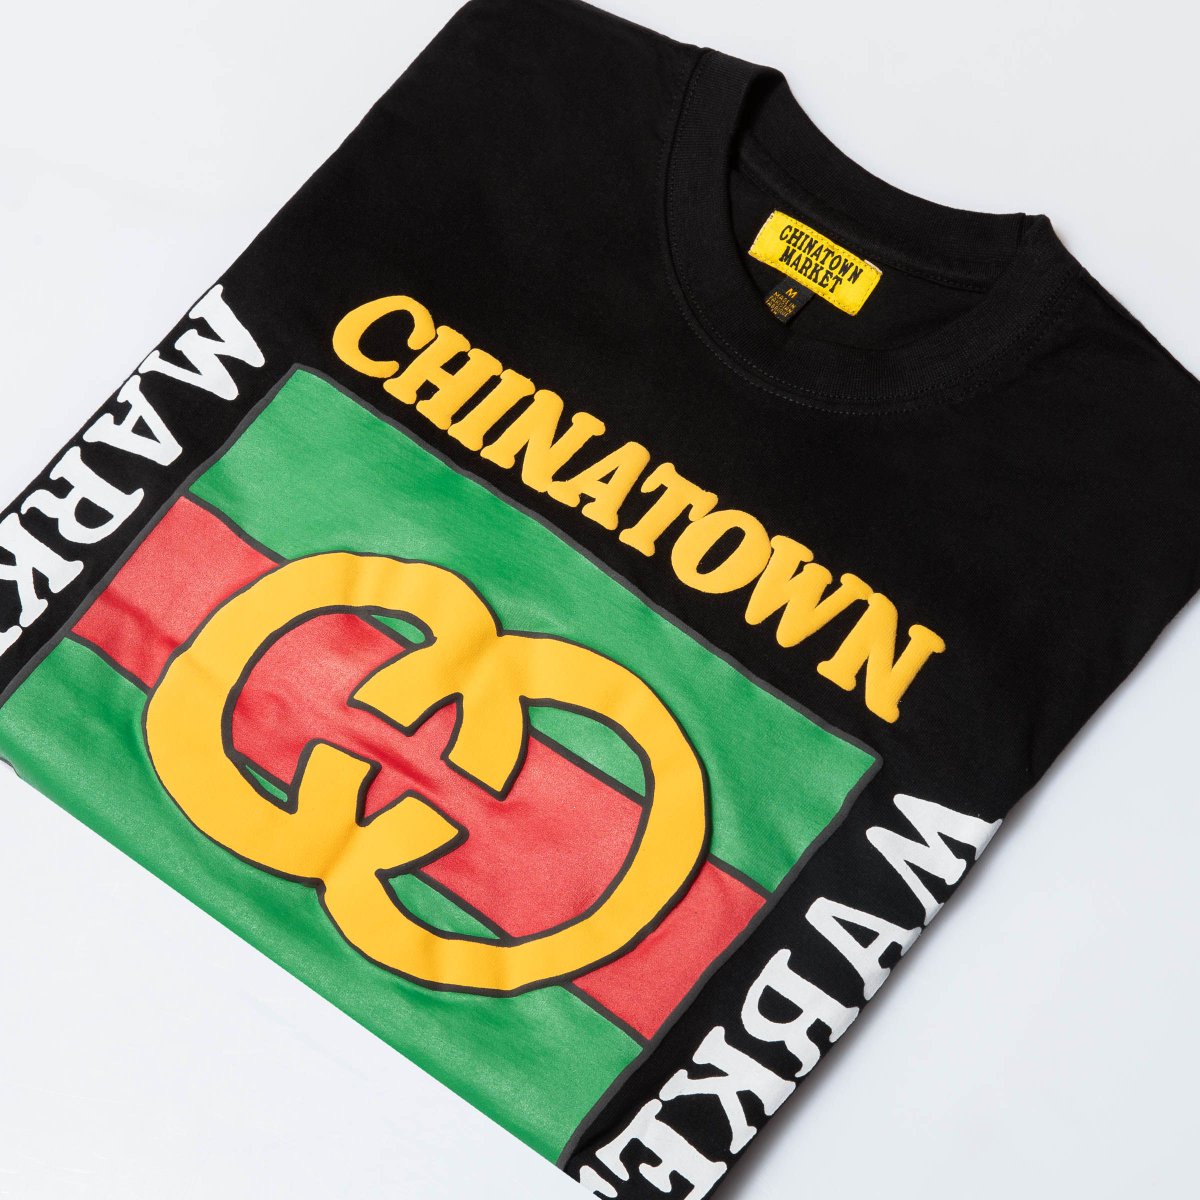 chinatown market gucci shirt